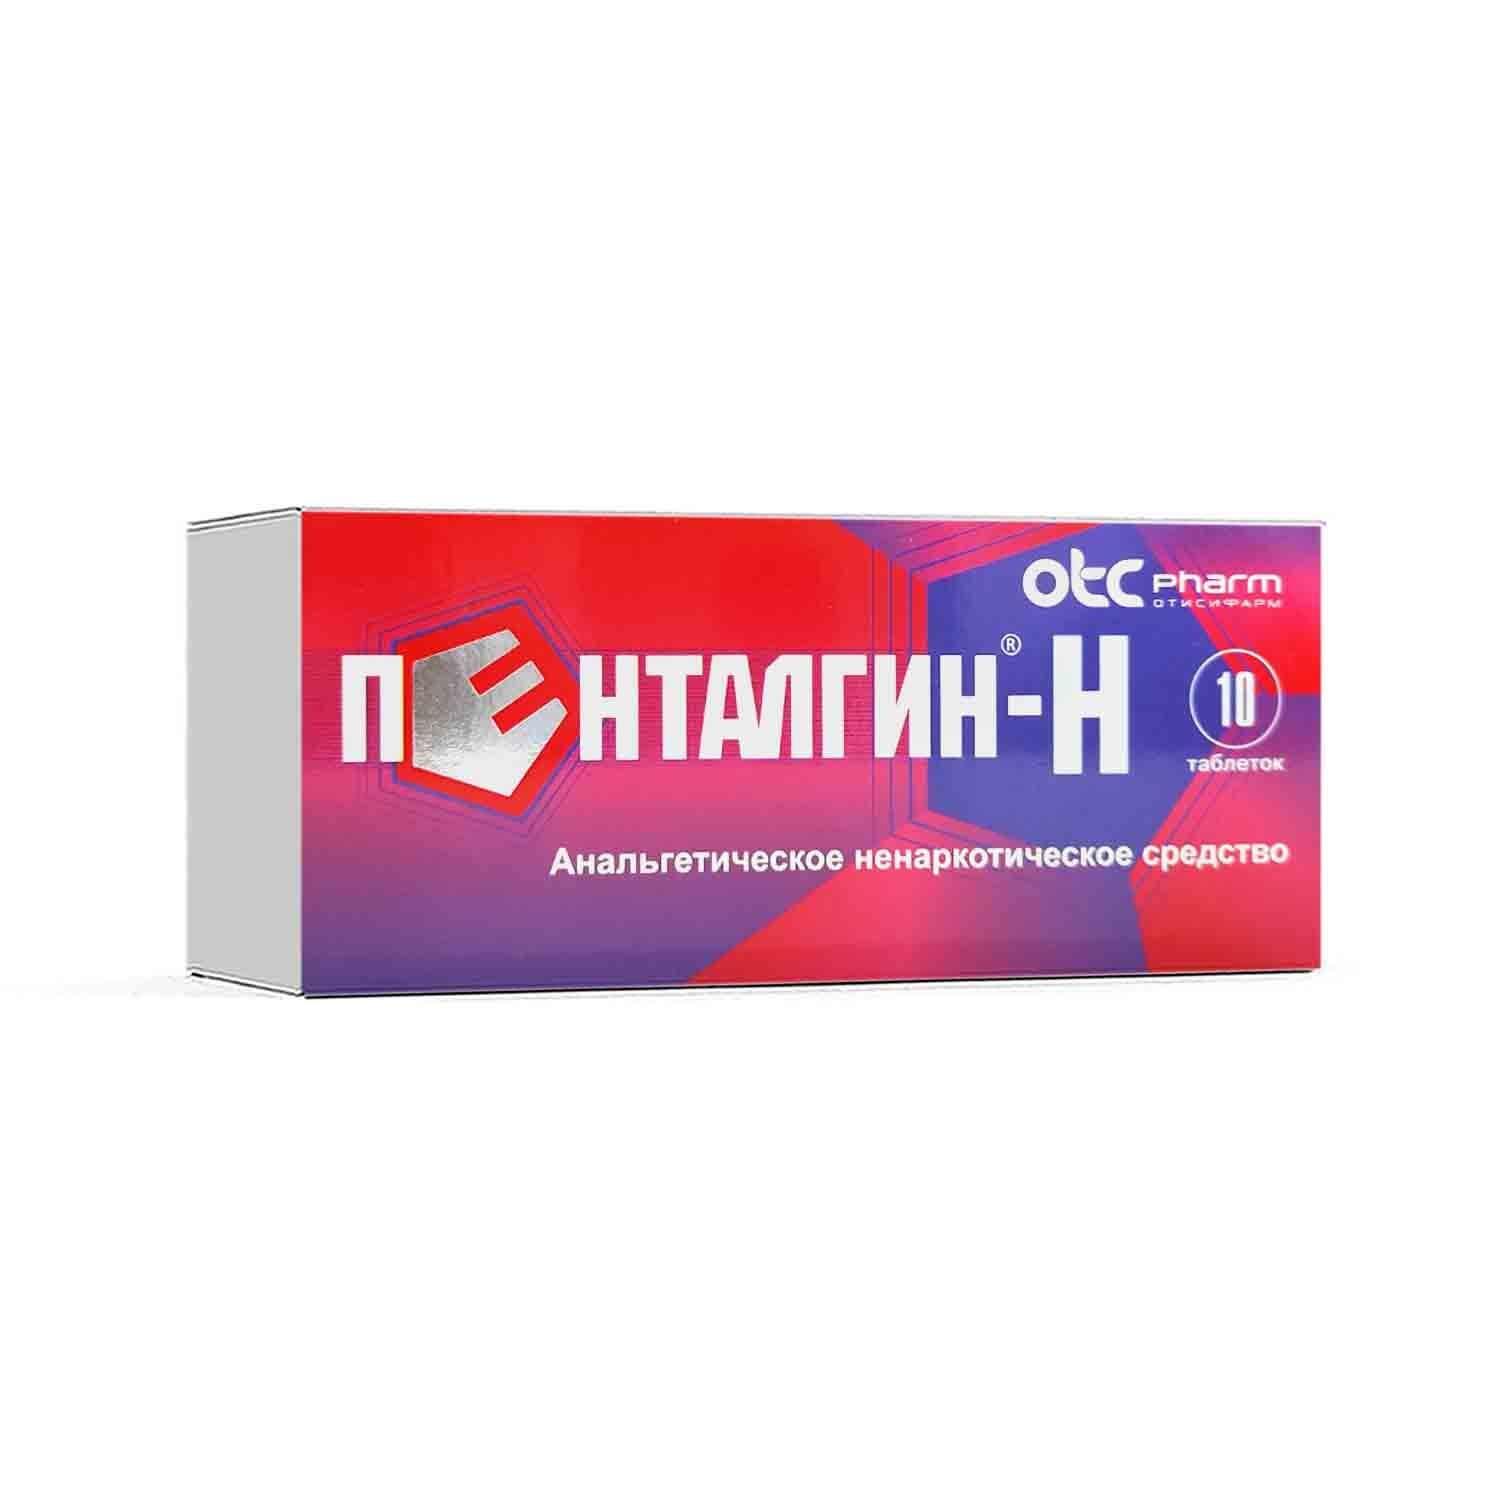 PENTALGIN H tabletkalari N10